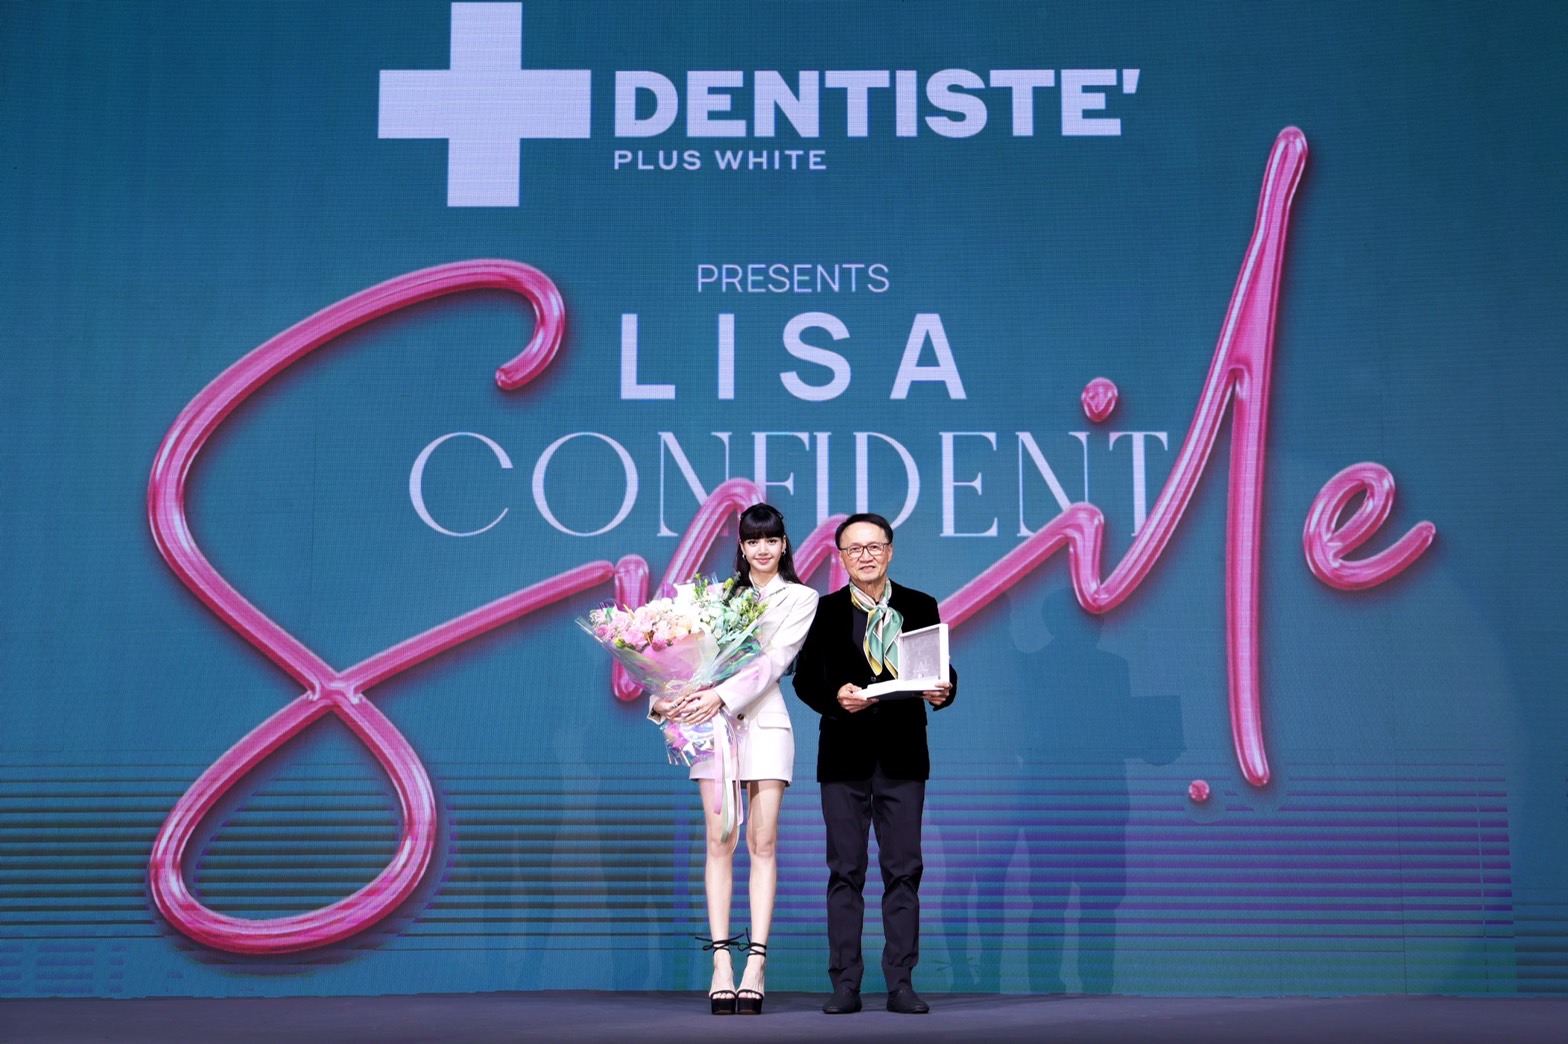 บลิ๊งค์ฟิน! ลิซ่าแจกยิ้มรัวๆ สร้างปรากฏการณ์ยิ้มสวย ฟันขาวมั่นใจกับยาสีฟันพรีเมียม เดนทิสเต้ ในงาน 'LISA' Special Greet: "DENTISTE' Presents Confident Smile with LISA"